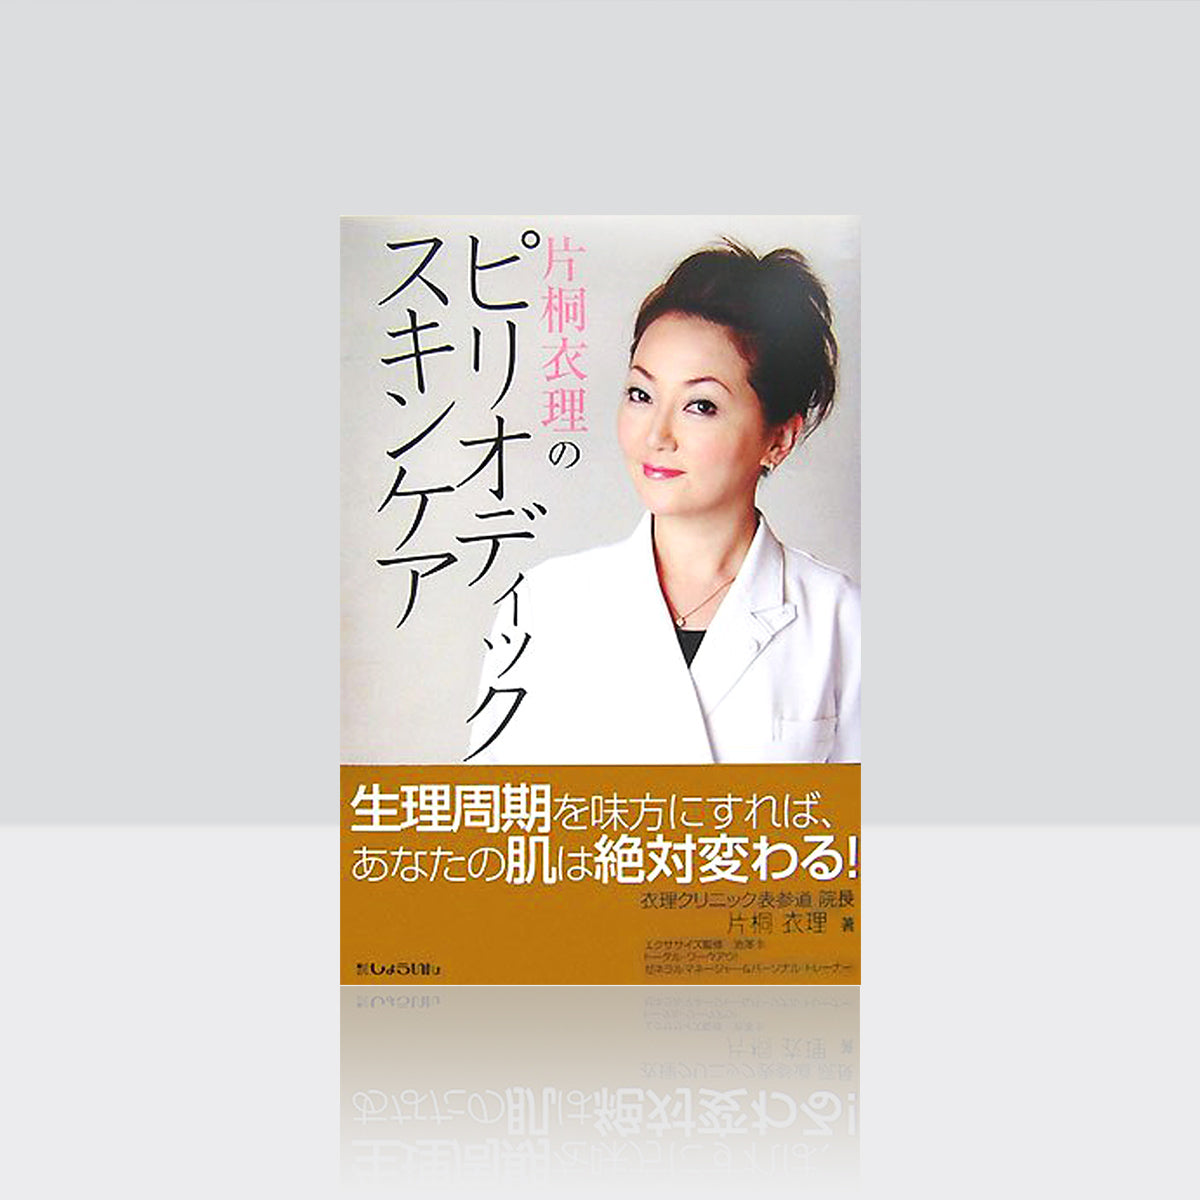 <Ấn phẩm> Periodic skin care của Eri Katagiri